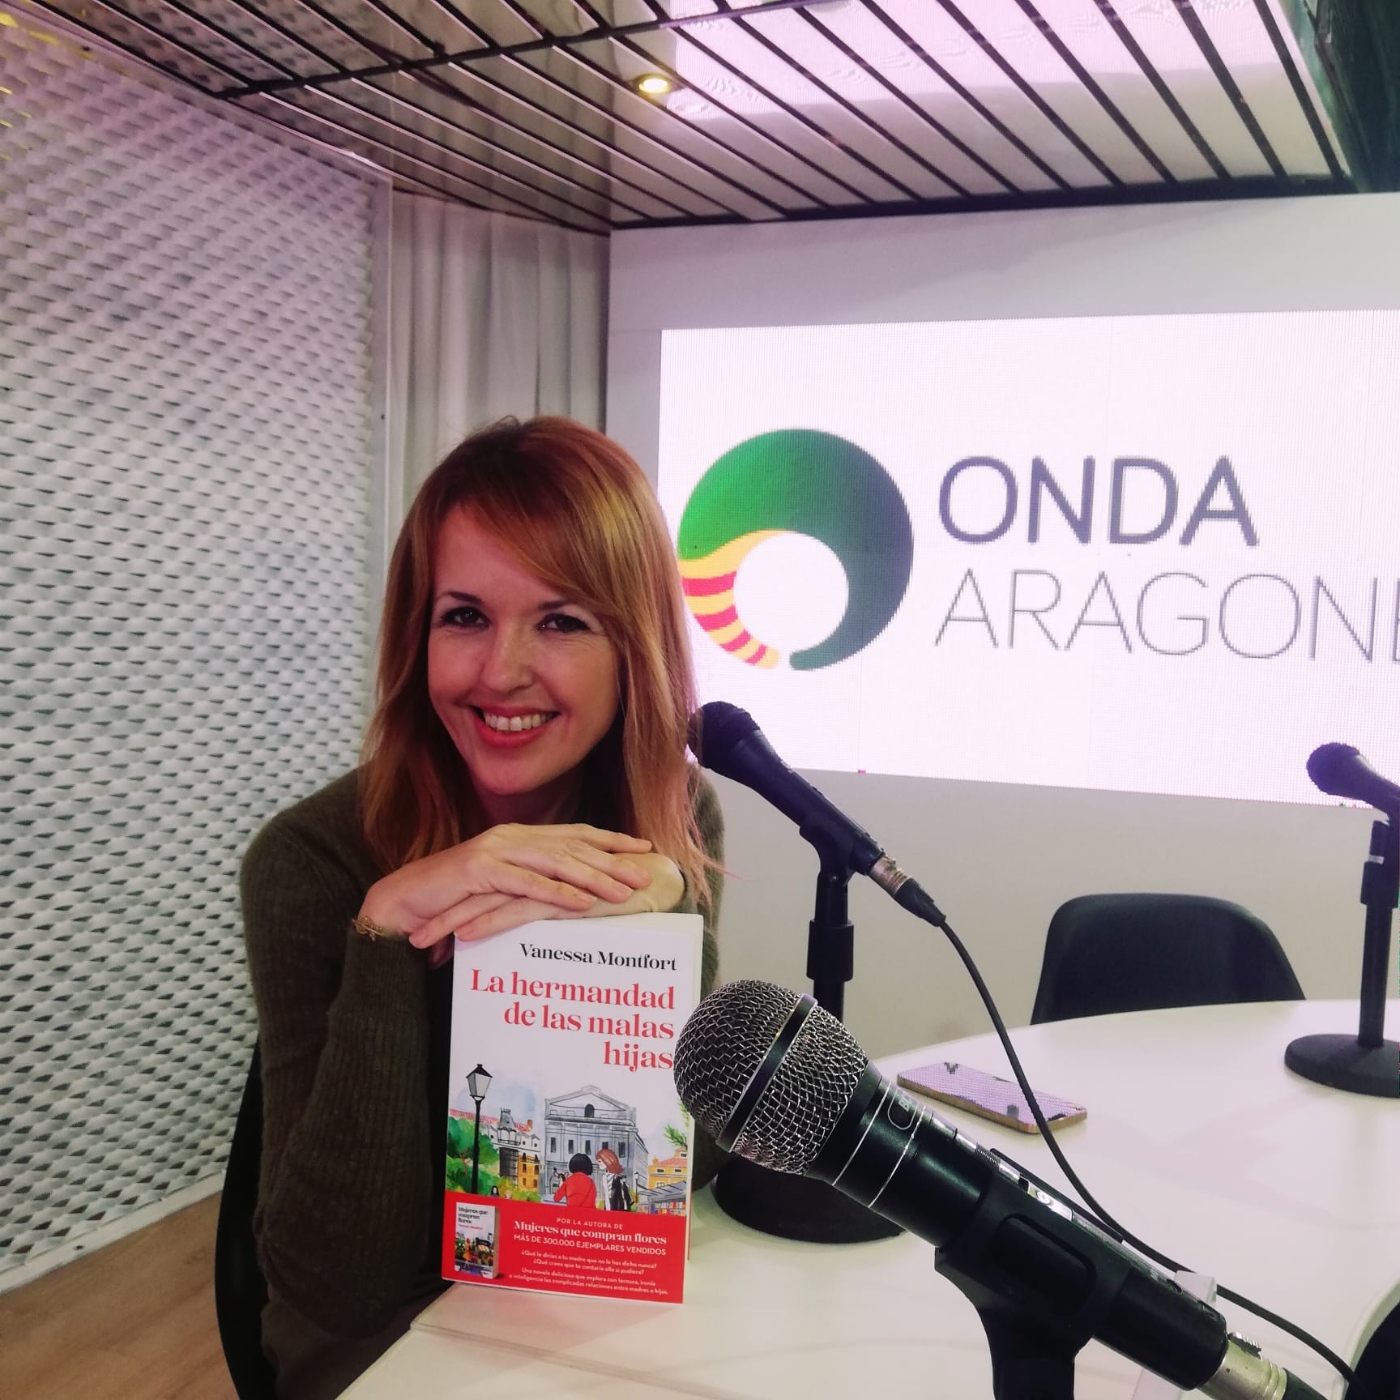 Las Mañanas de Onda Aragonesa, La hermandad de las malas hijas - Onda  Aragonesa - Podcast en iVoox